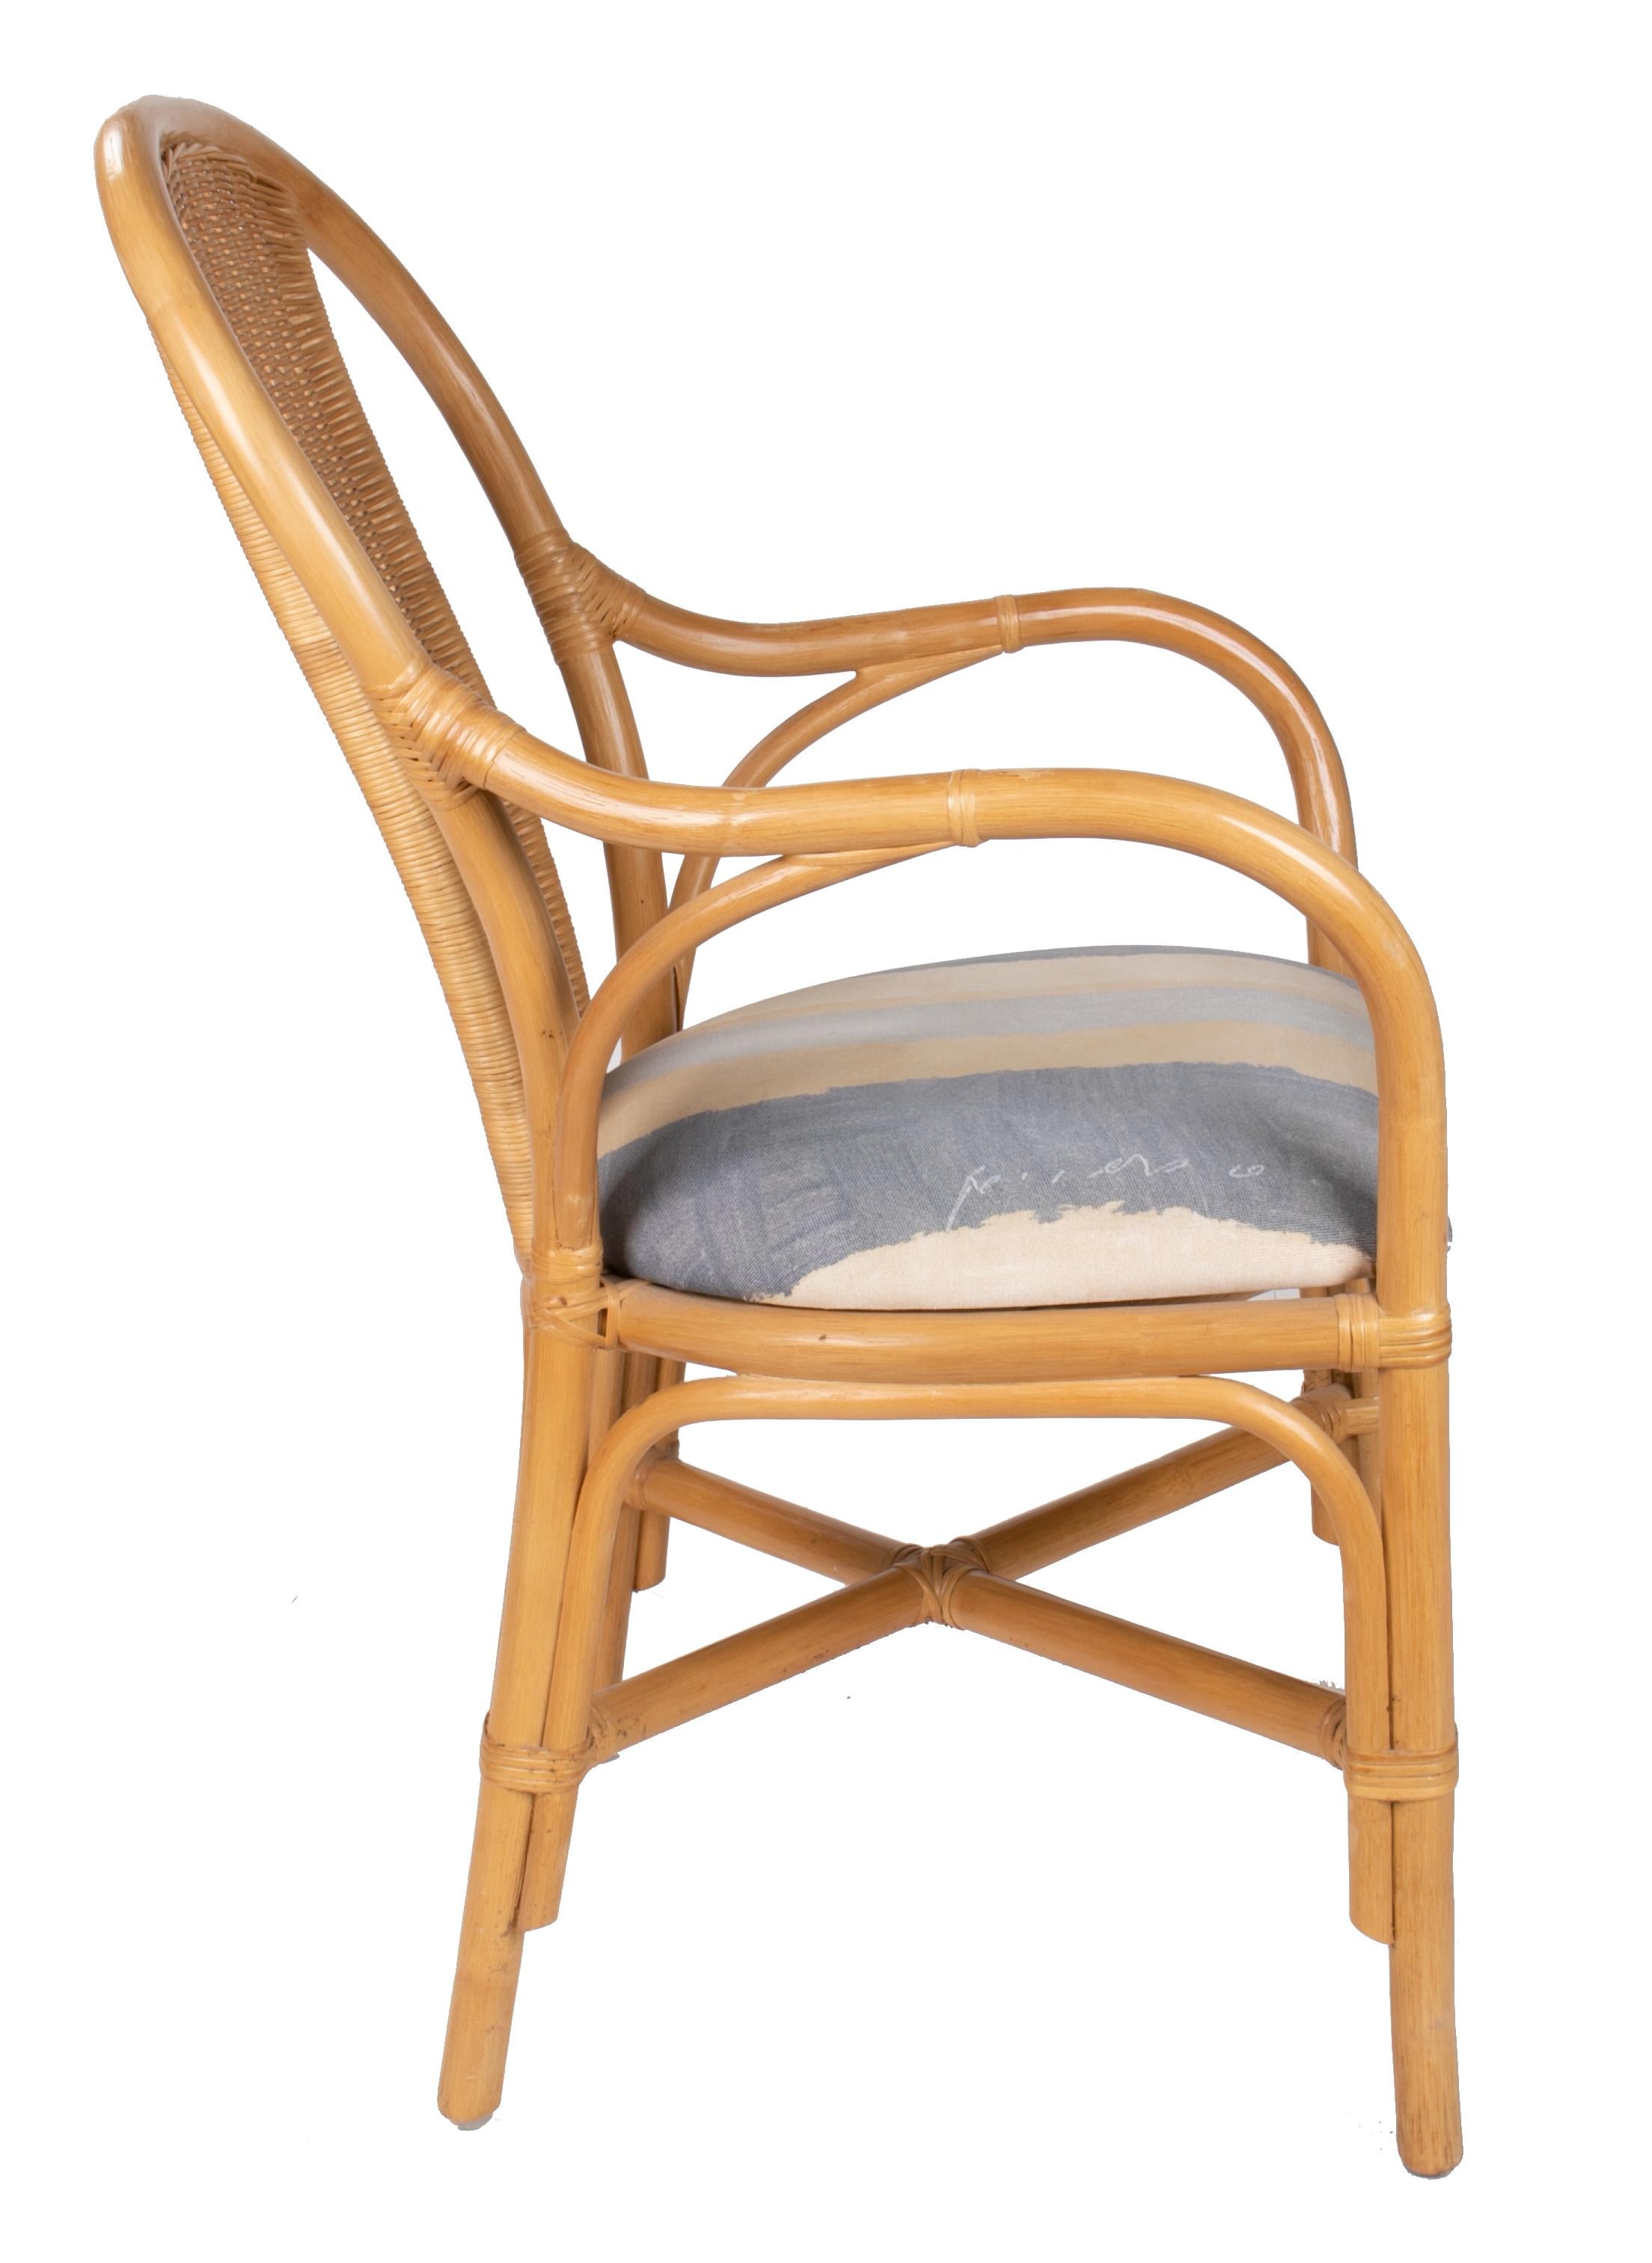 vier gepolsterte spanische Sessel aus Bambus und Korbgeflecht aus den 1980er Jahren.
   